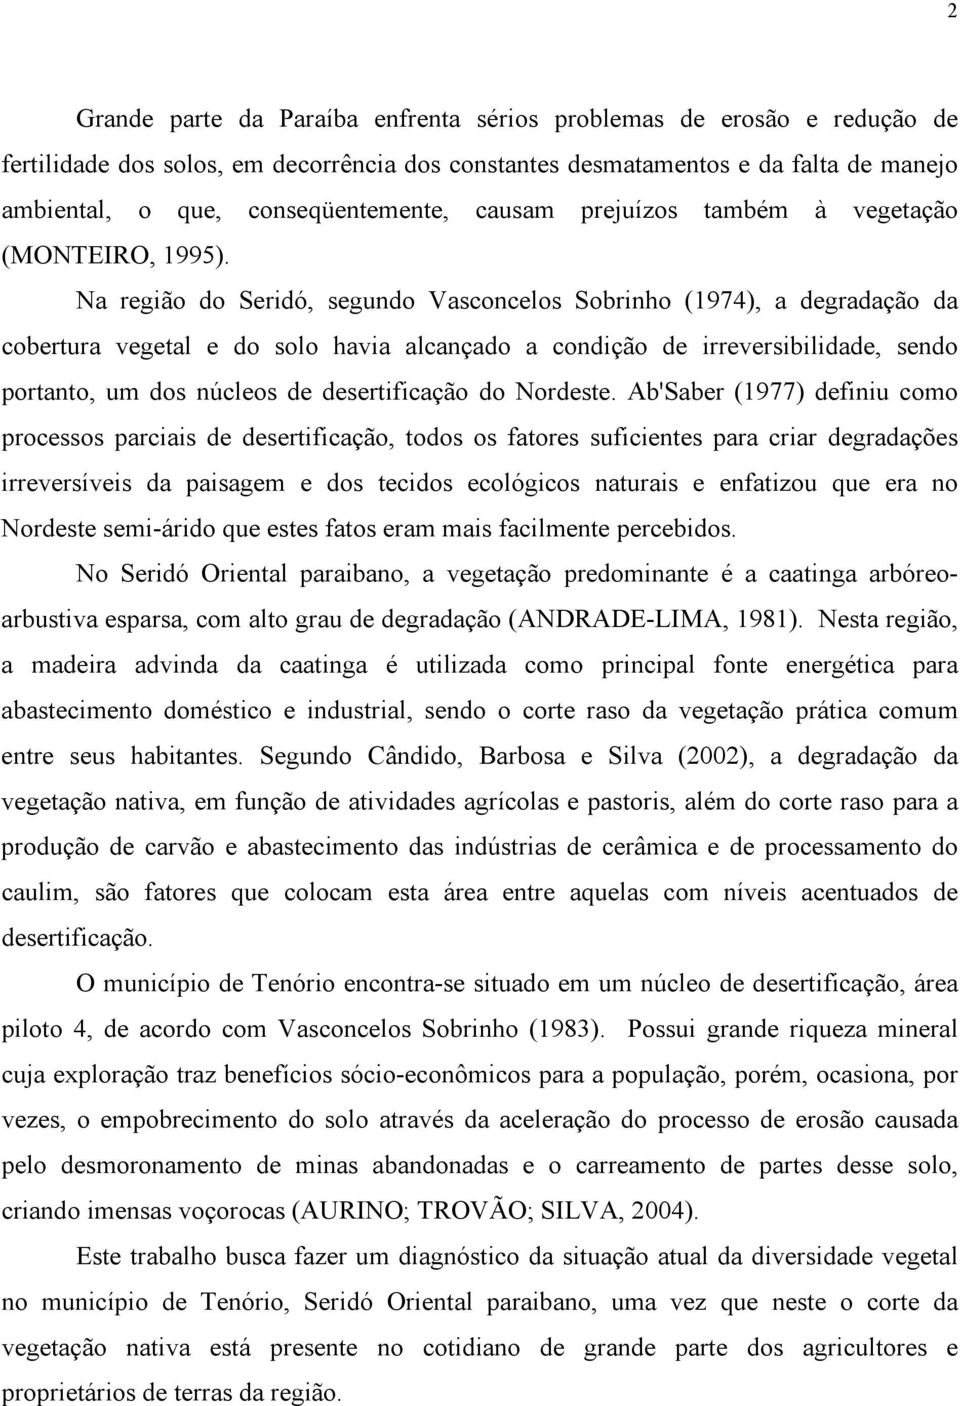 Na região do Seridó, segundo Vasconcelos Sobrinho (1974), a degradação da cobertura vegetal e do solo havia alcançado a condição de irreversibilidade, sendo portanto, um dos núcleos de desertificação